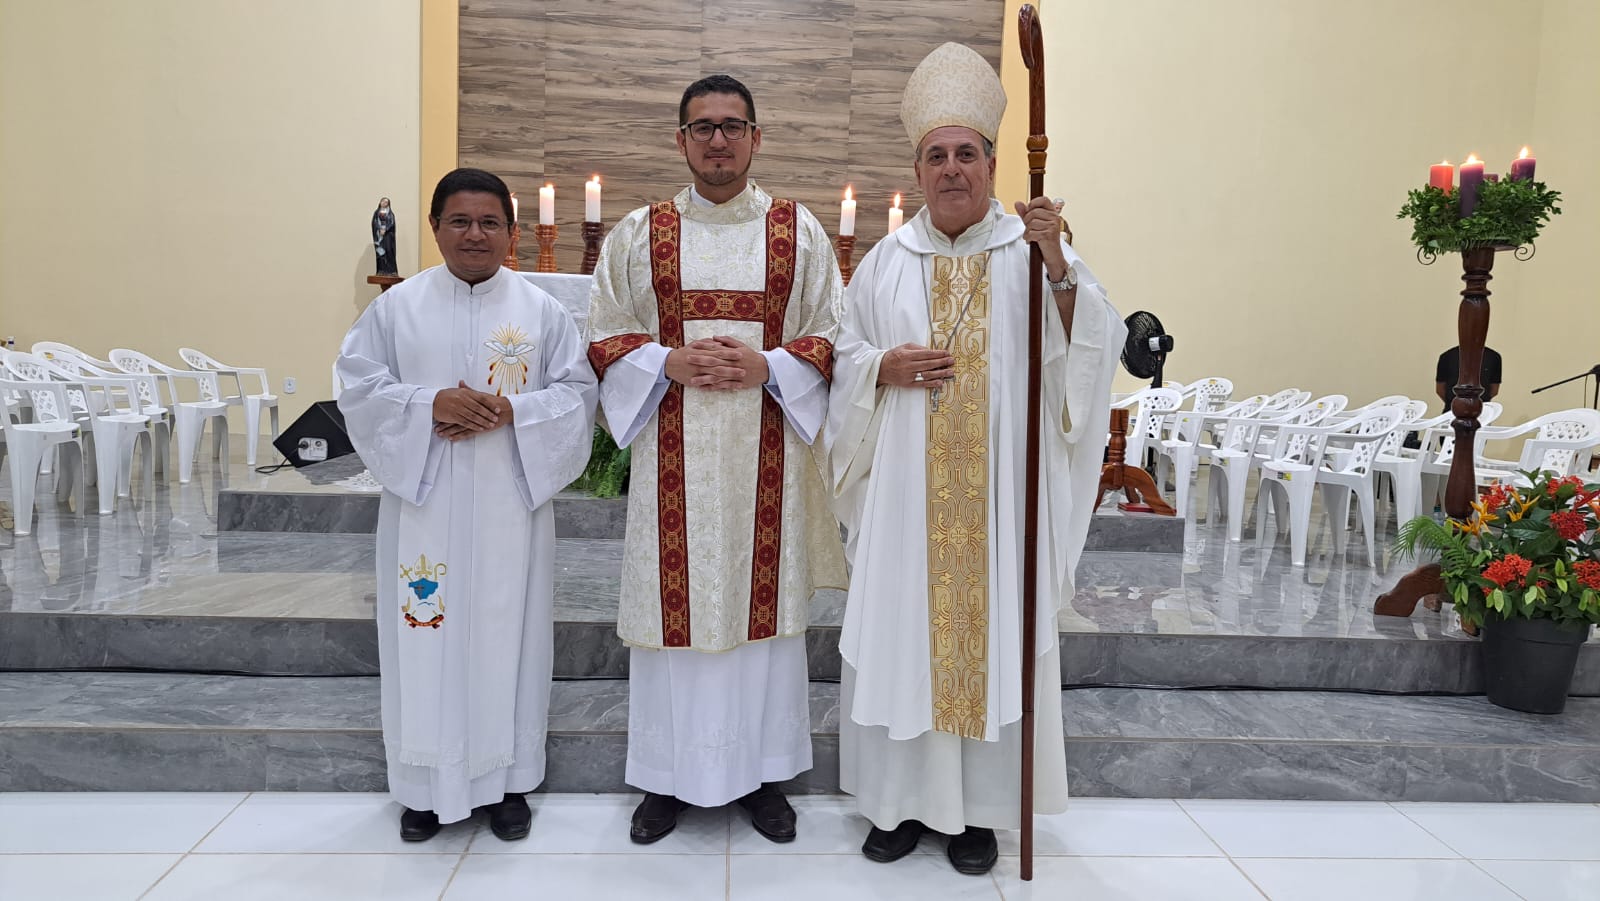 Boca do Acre: berço de vocações sacerdotais